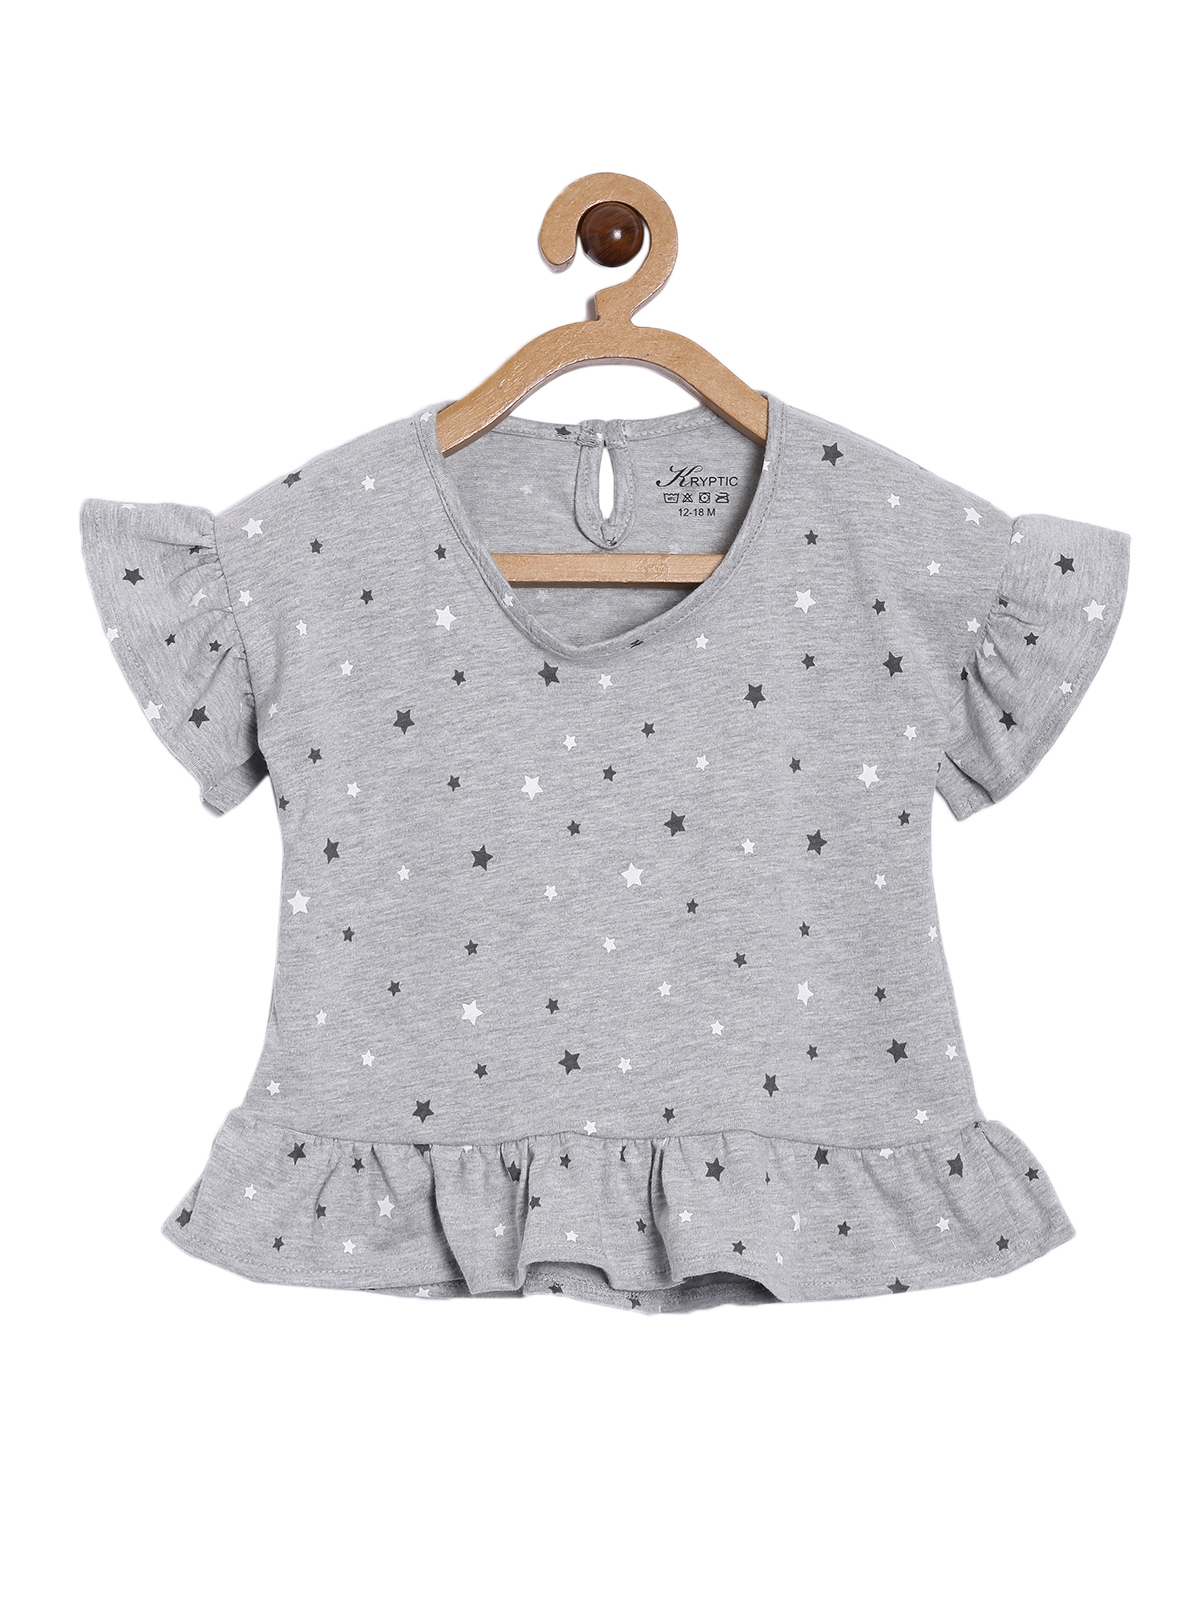 Kryptic Infant Girls Grey Melange Printed Bell Sleeves Pure Cotton Peplum Top